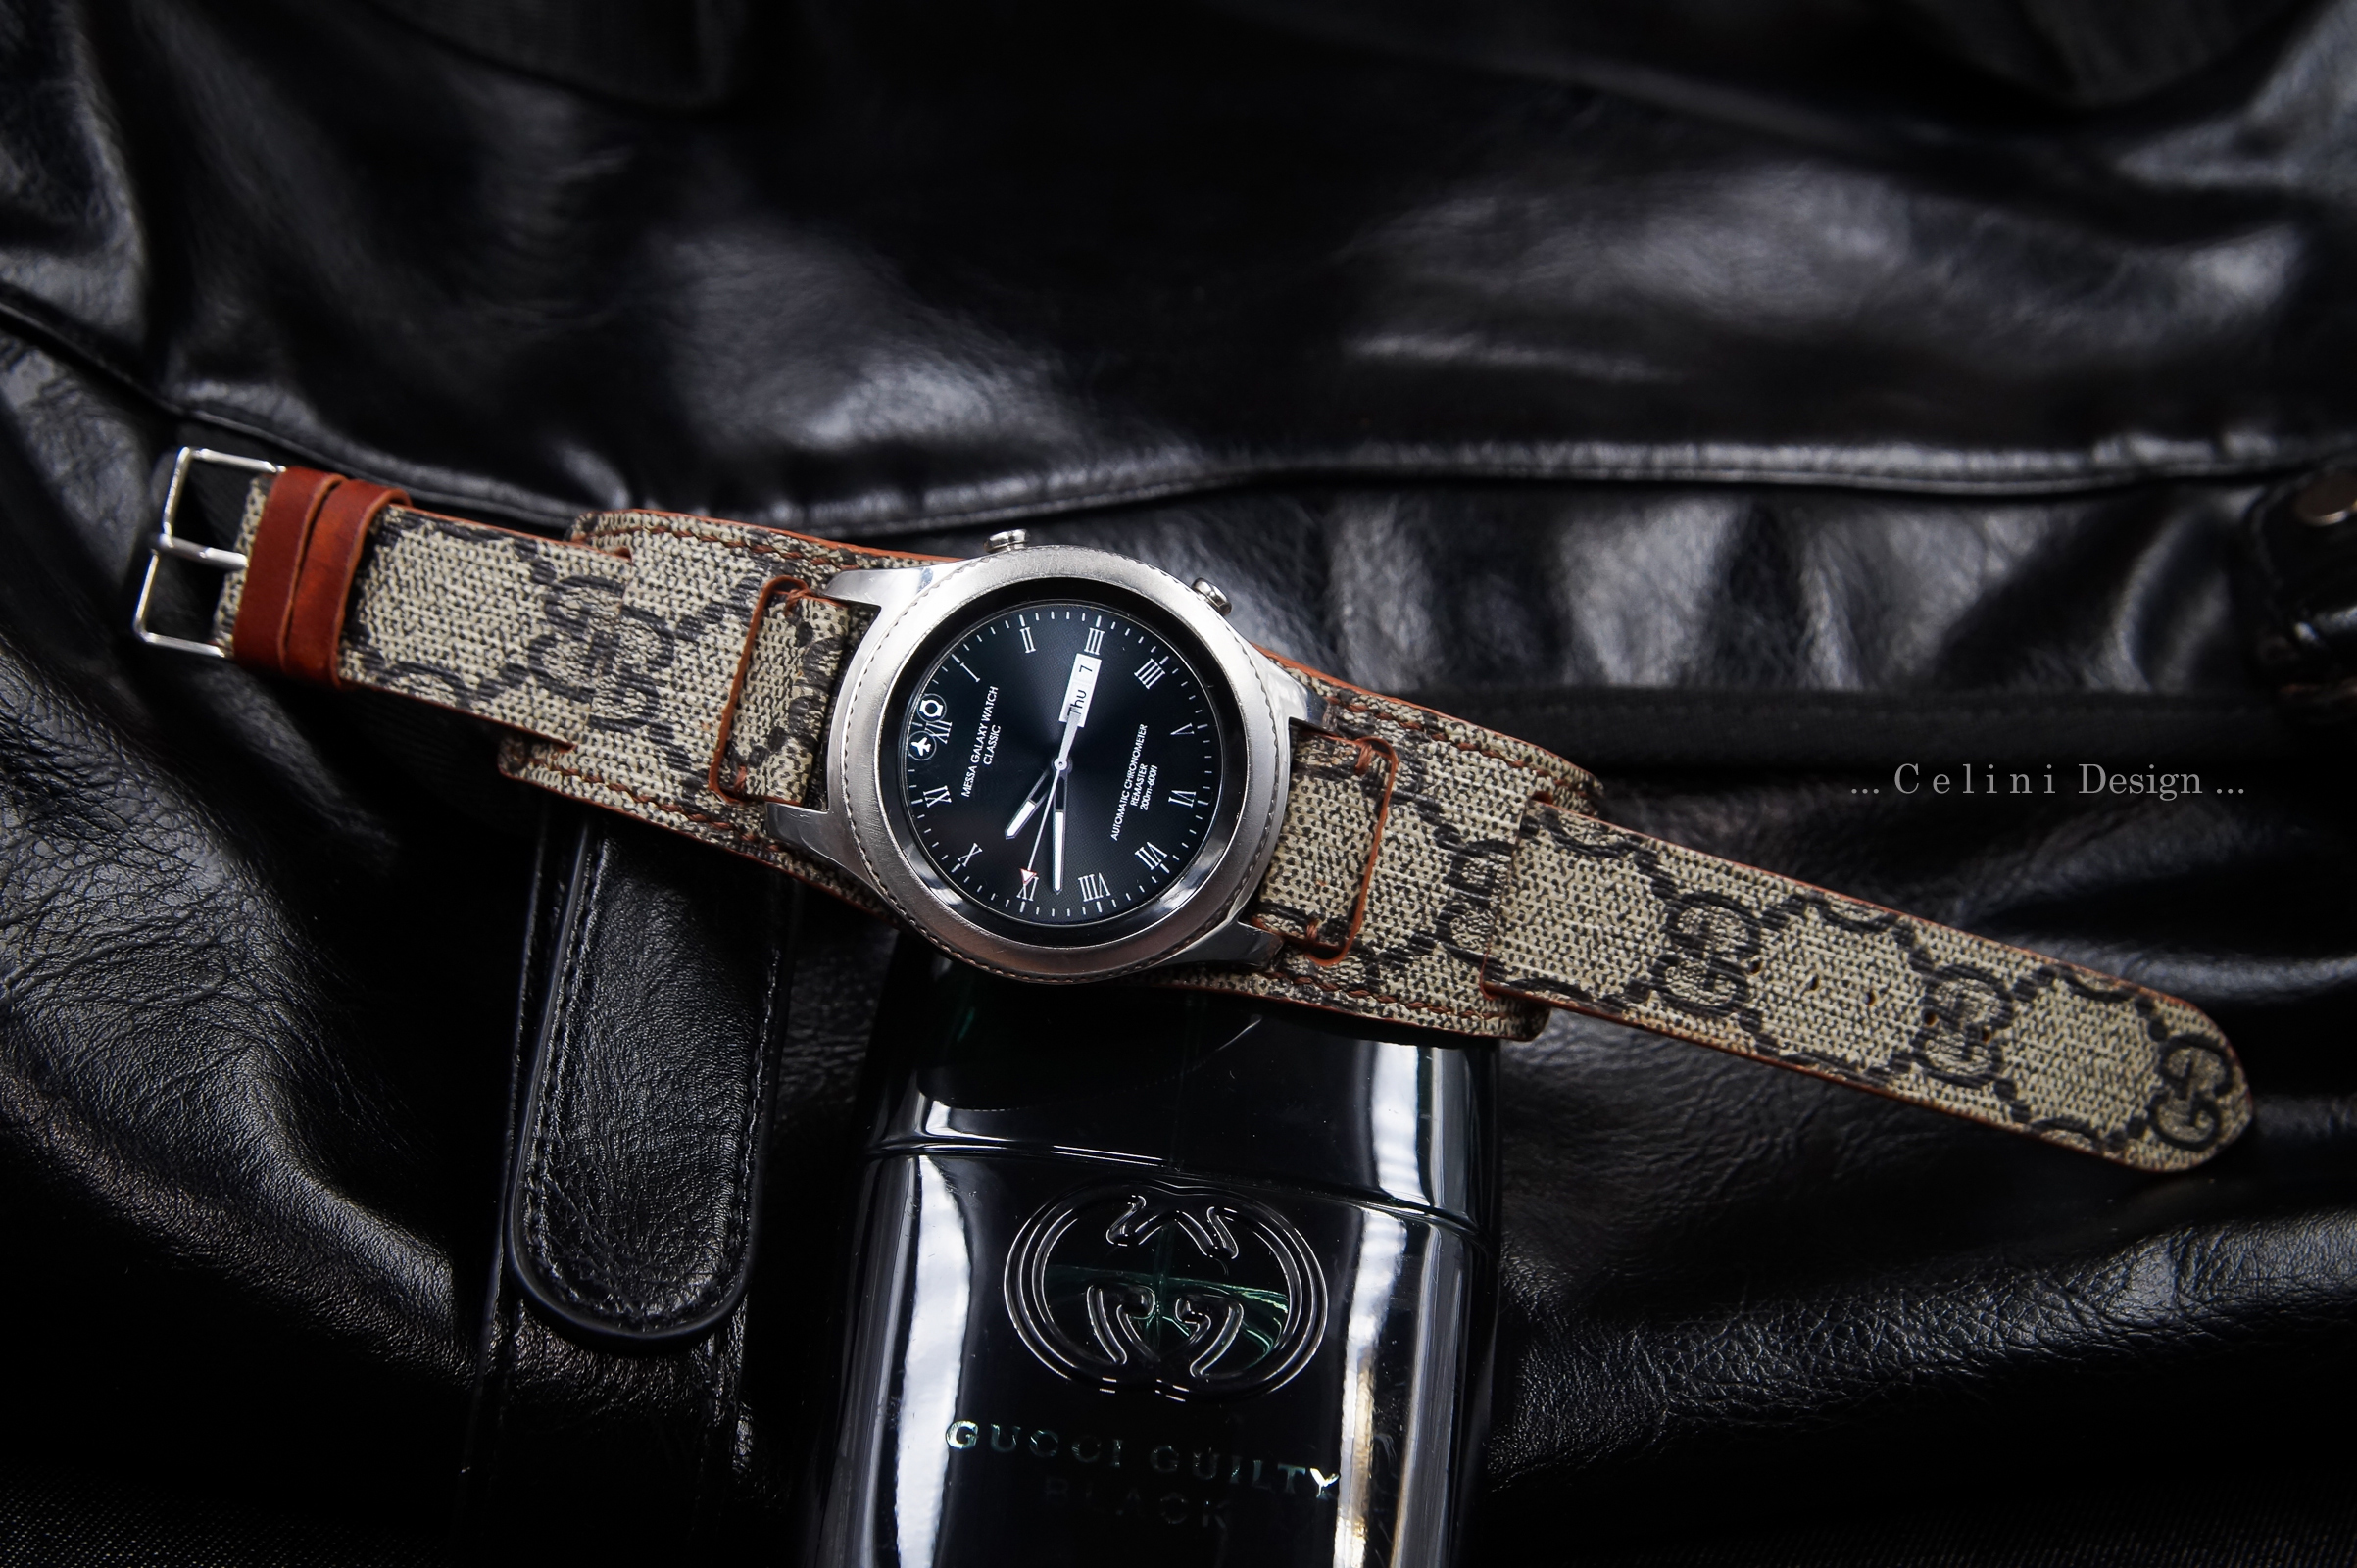 Gucci Tiger Watch Strap For Samsung Watch